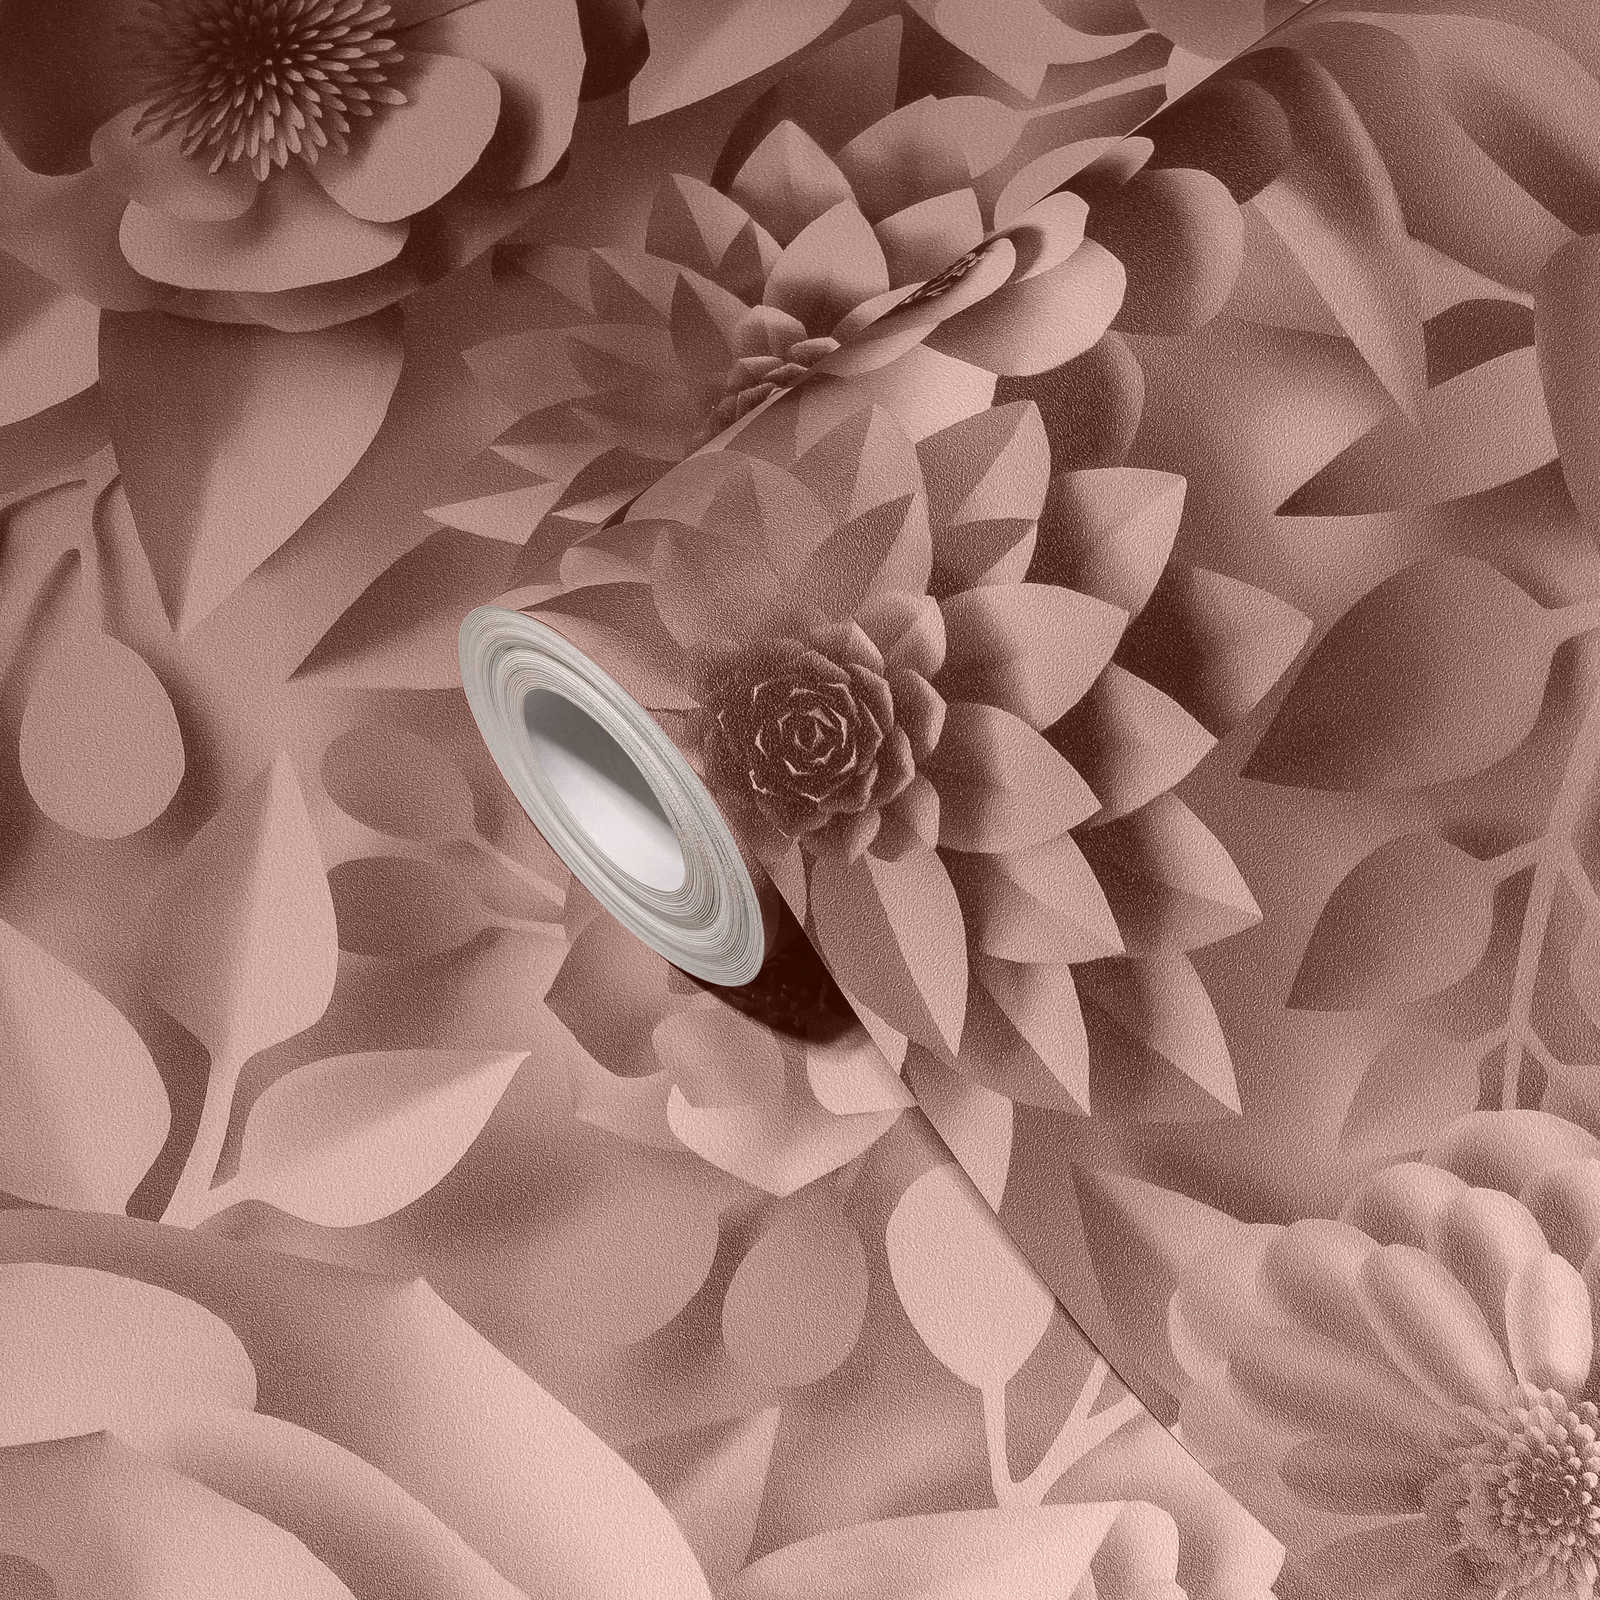             Papier peint 3D avec fleurs en papier, motif graphique de fleurs - rose
        